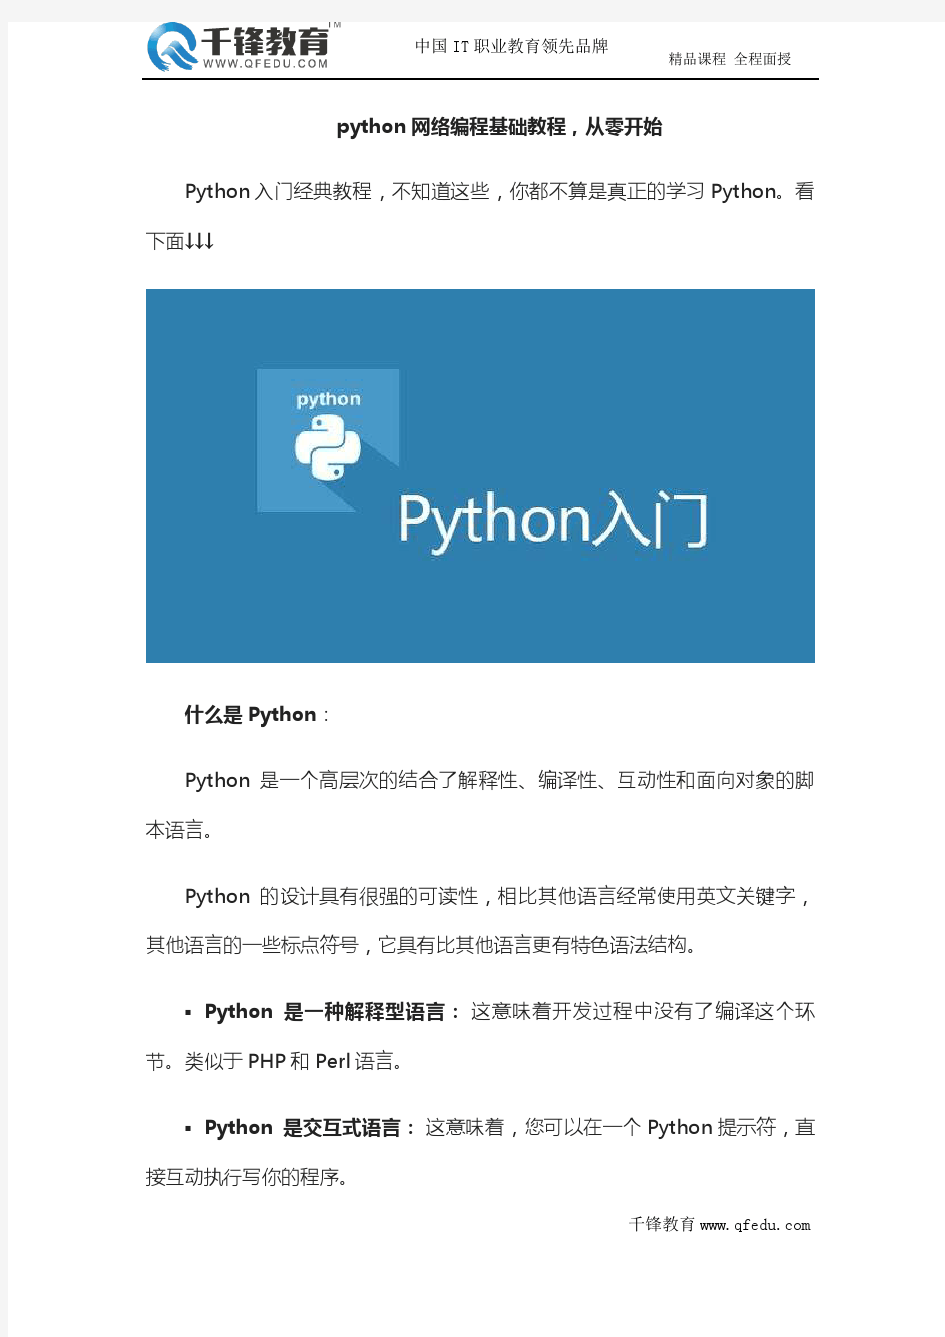 python网络编程基础教程,从零开始